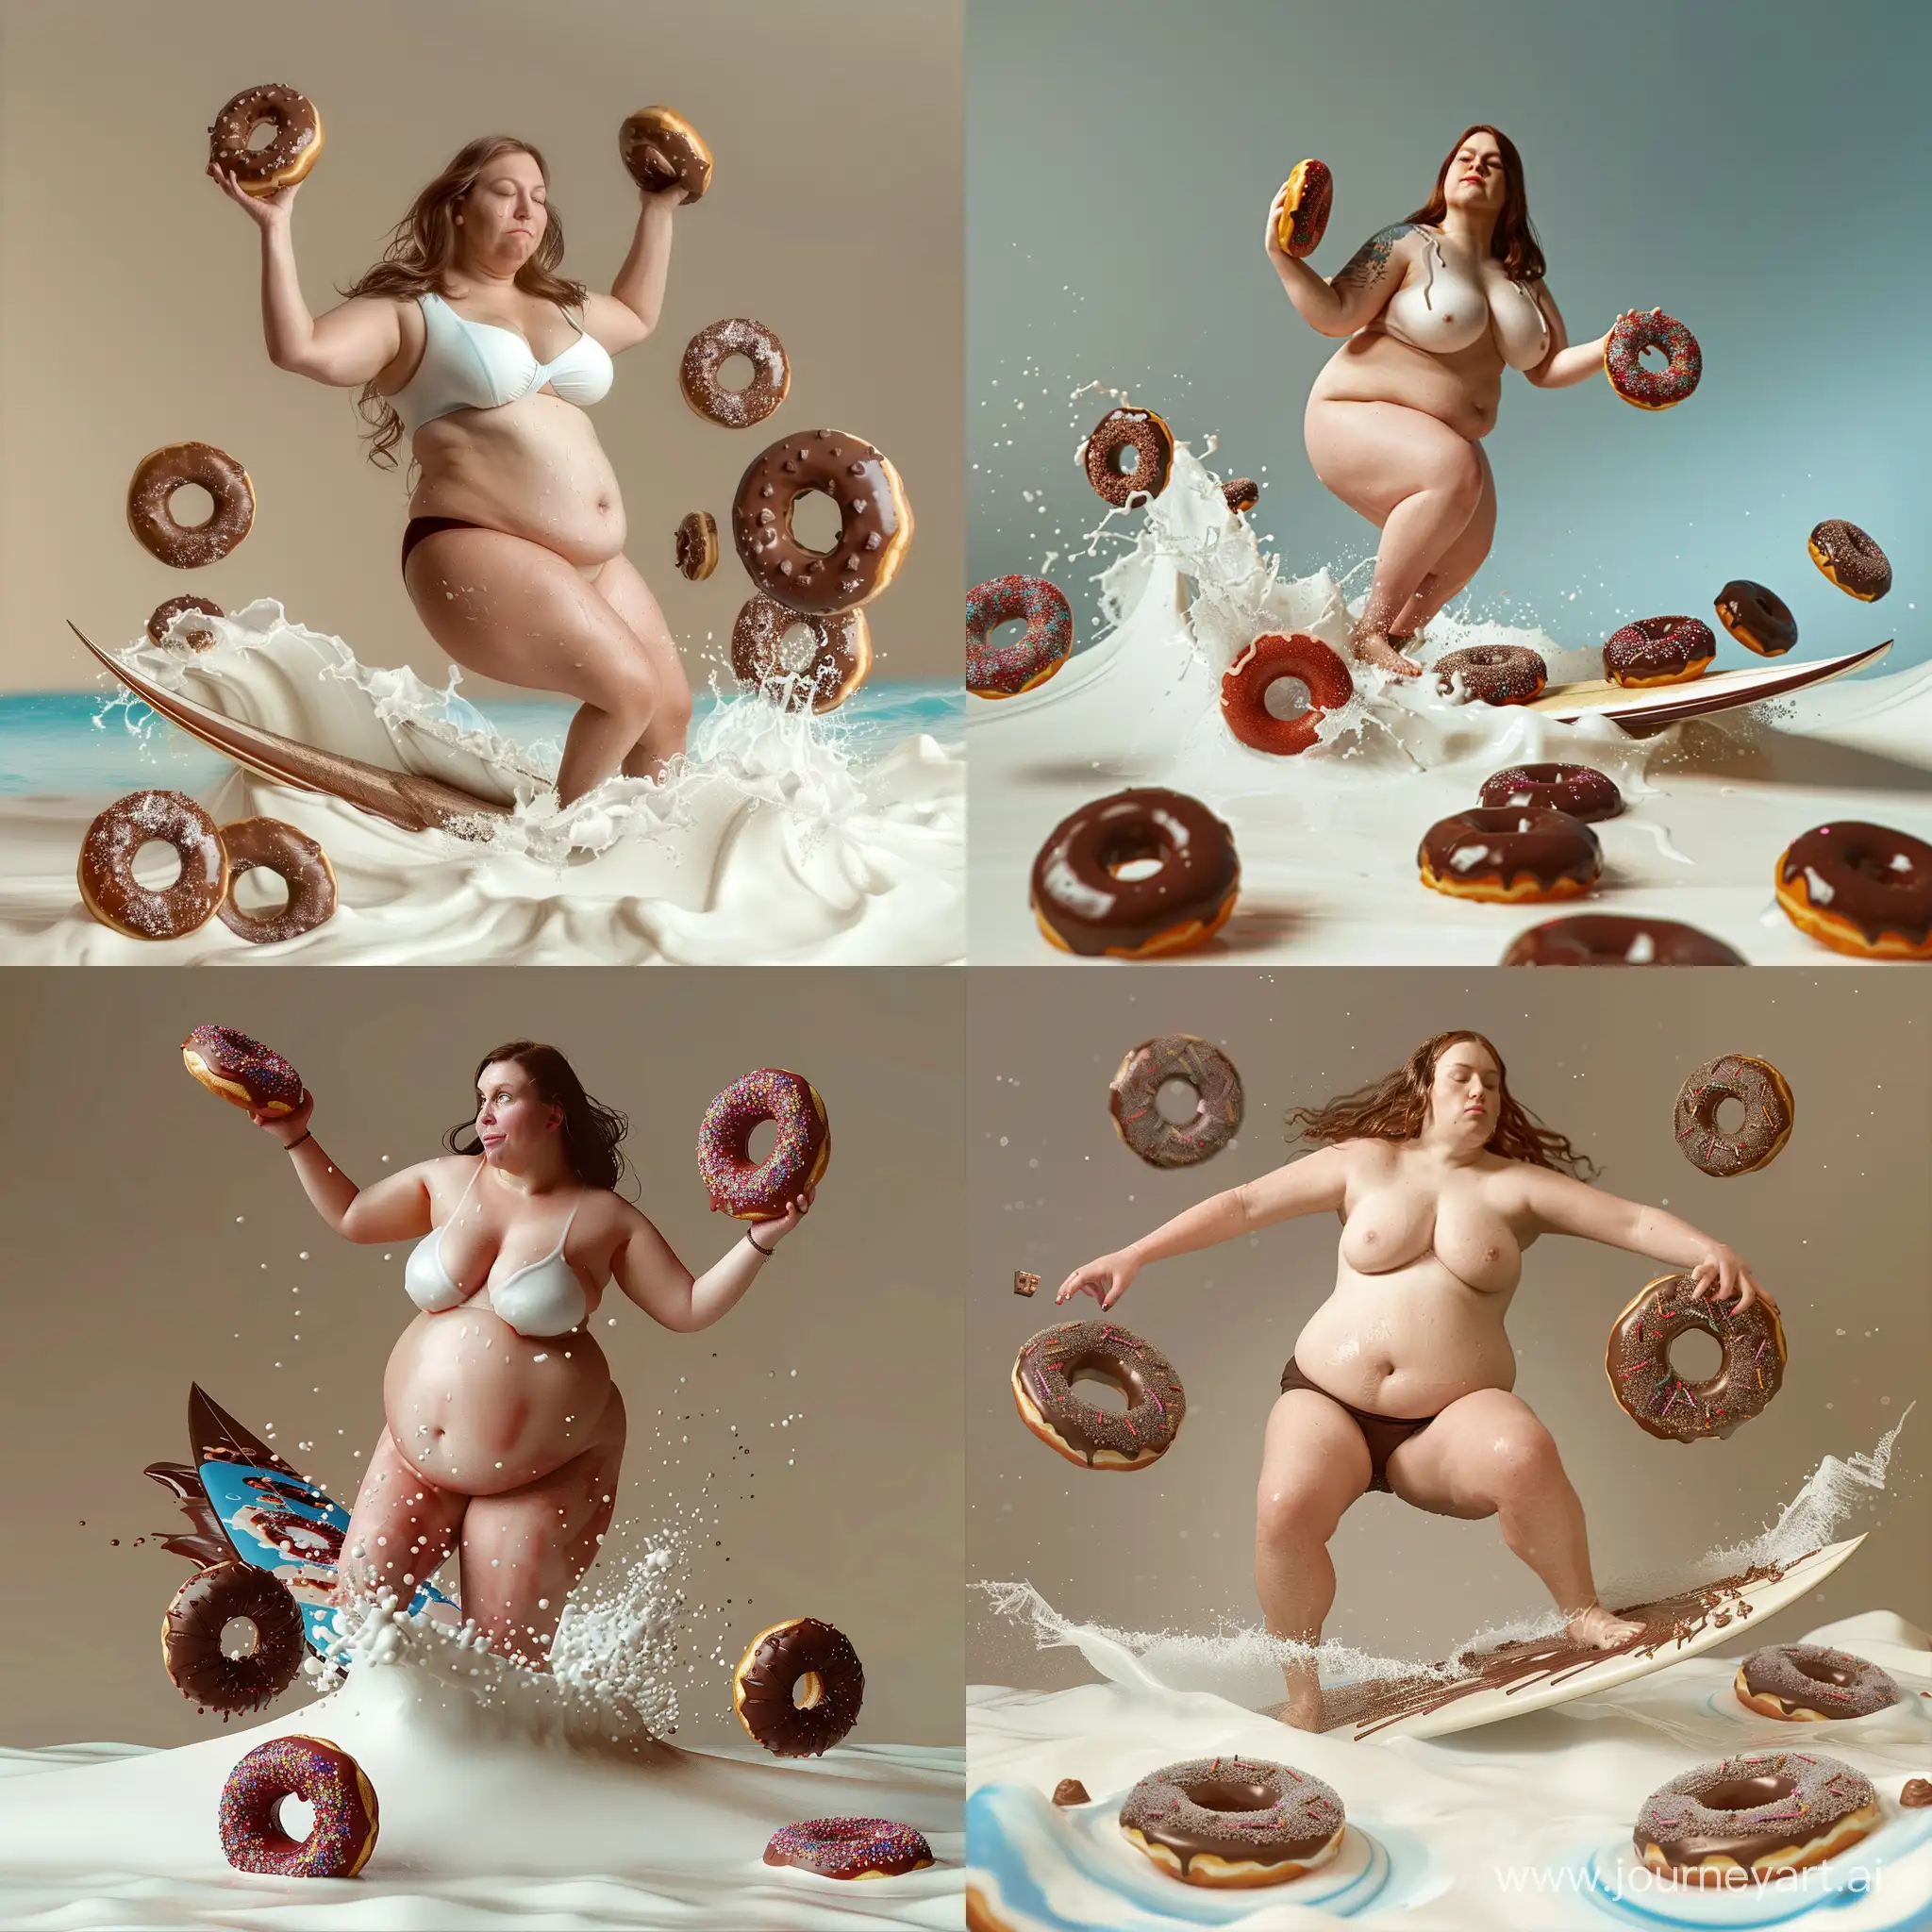 une femme, grosse, avec des donuts au chocolat, qui surf sur un océan de lait